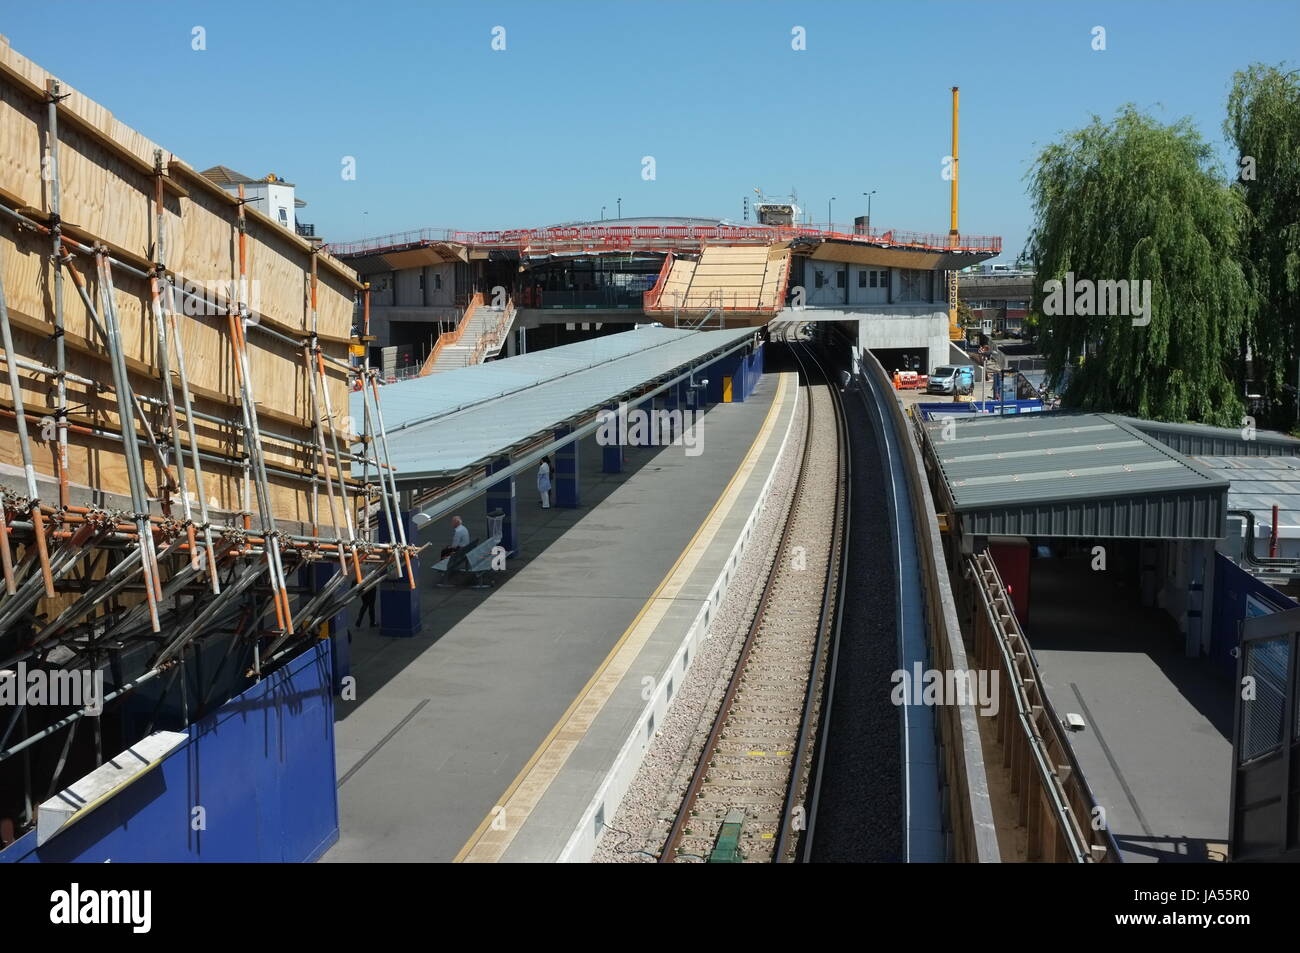 Elizabeth Linie (Crossrail) Bauarbeiten im Gange am Bahnhof von Abbey Wood. Süd-Ost-London, England, Vereinigtes Königreich. 25. Mai 2017. Stockfoto